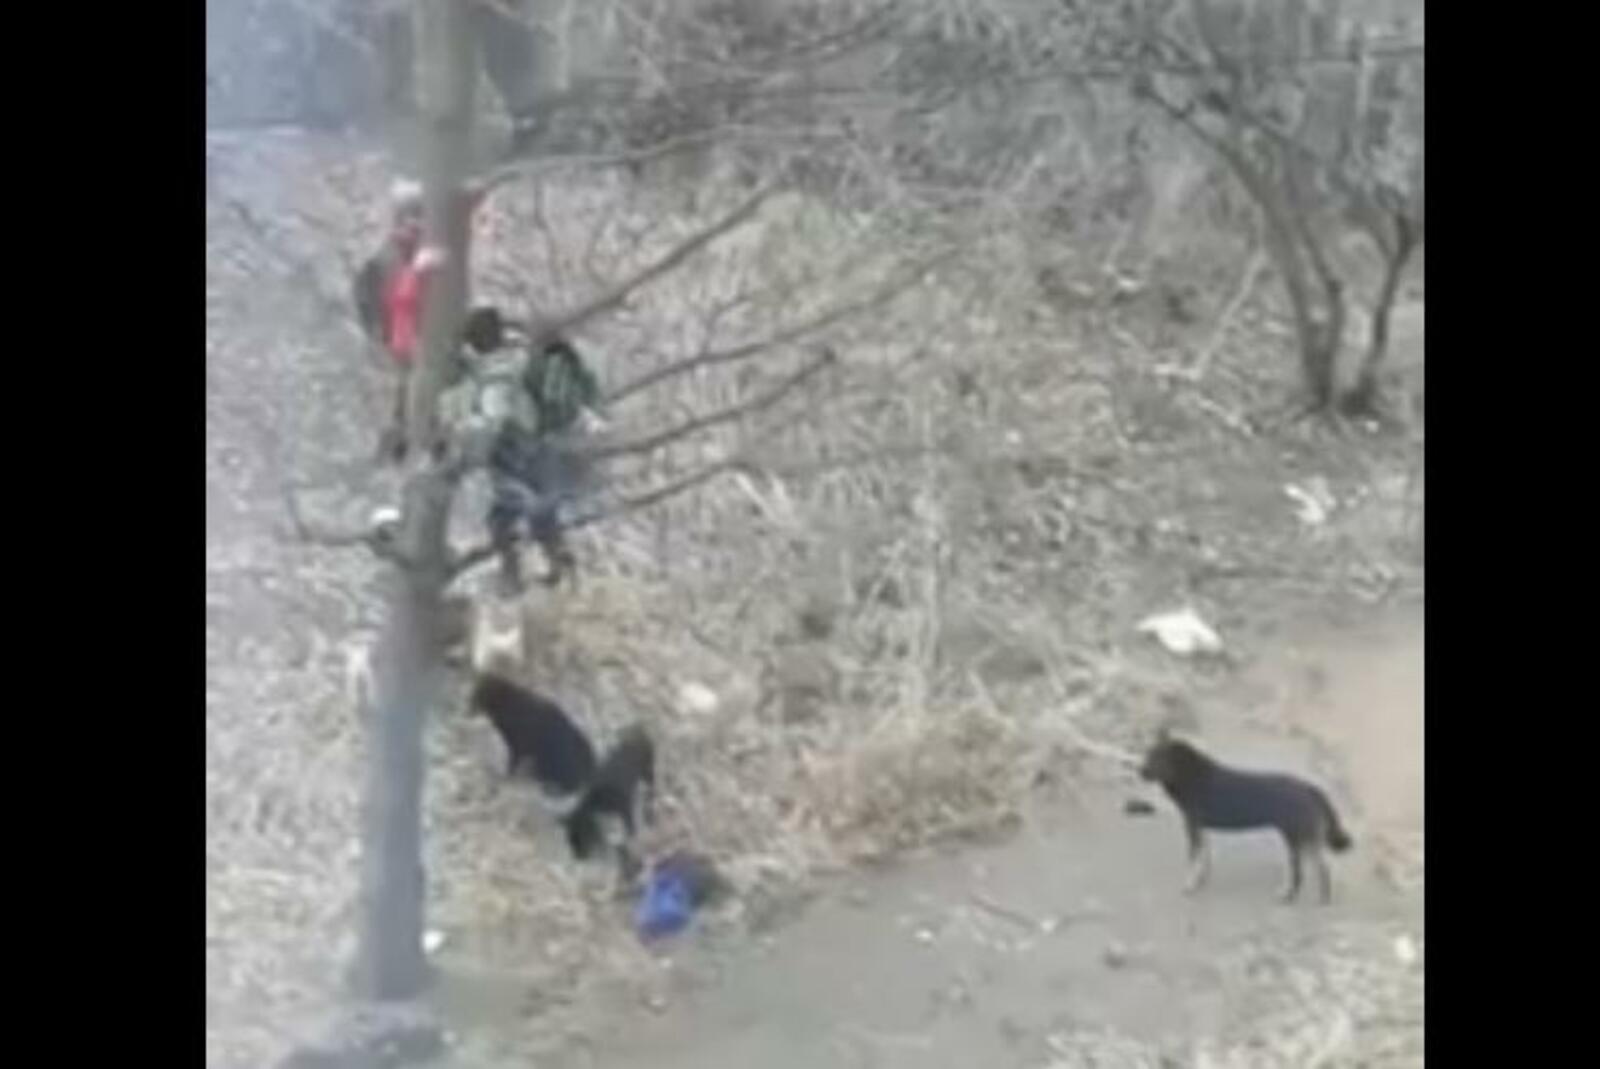 Новое нападение. Стая собак напала на ребенка в Башкирии. Бродячие собаки в Башкирии. Башкирия нападение собаки. Нападение собак на ребенка в Башкирии видеосюжет.